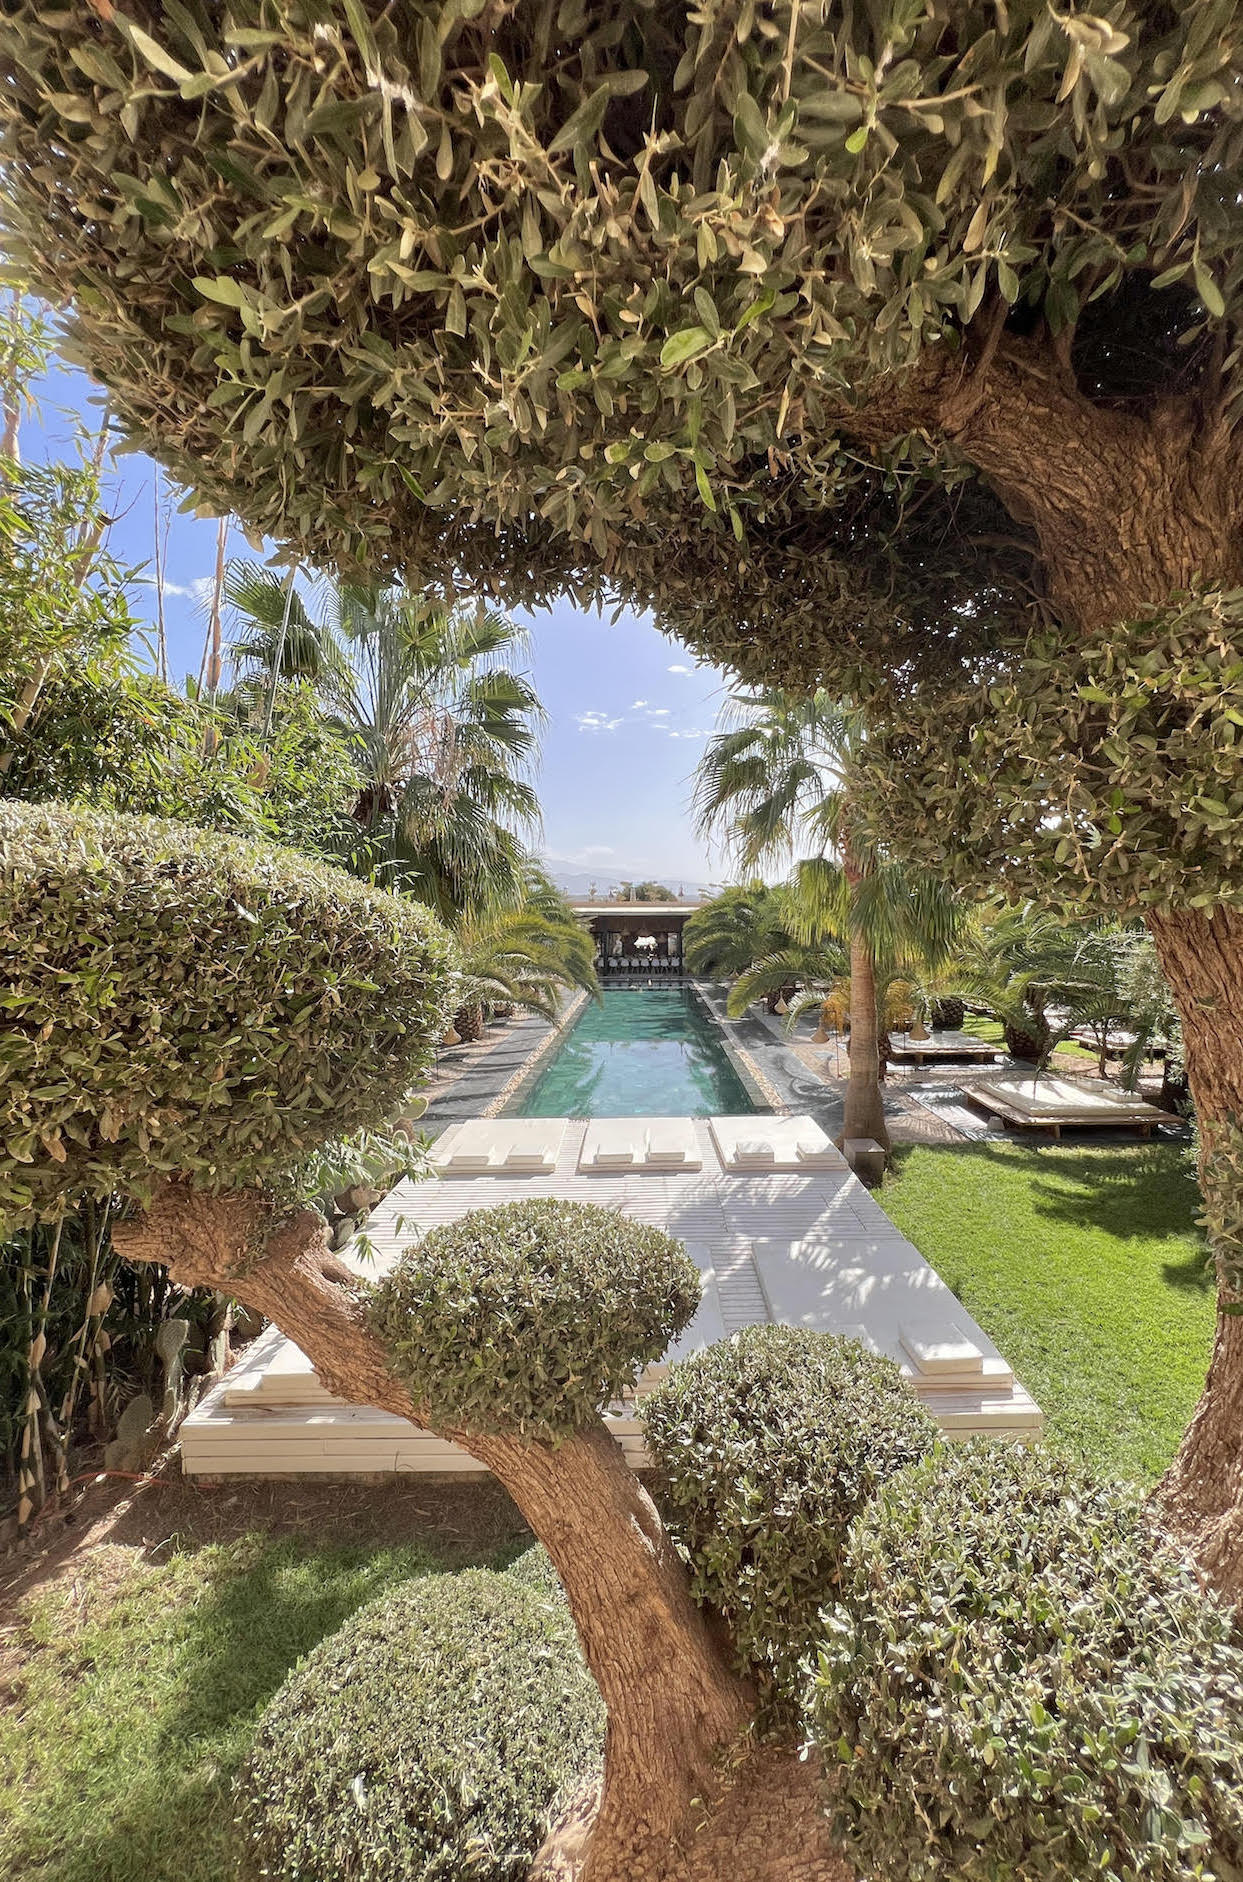 Location Villa Marrakech